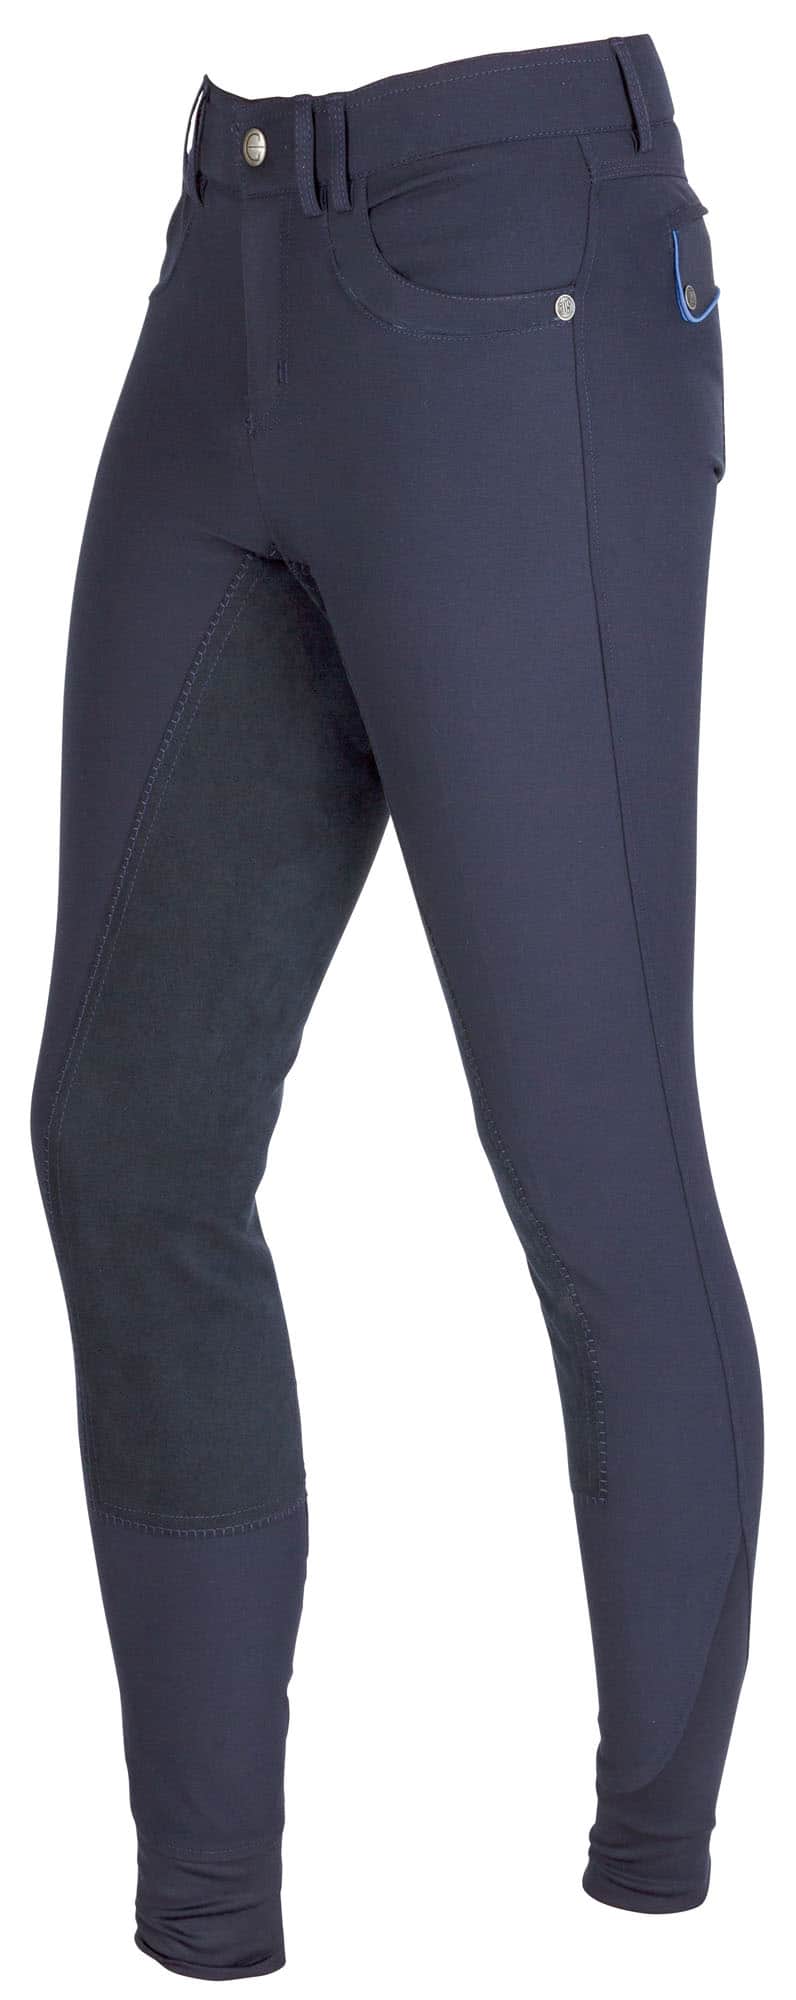 Twój Koń Bryczesy TECHNO Covalliero męskie Wyjątkowo atrakcyjne bryczesy z mikrowłókien i bawełny zapewniające perfekcyjny komfort noszenia. Kontrastowe szwy i wypustki umieszczone na kieszeniach na pośladkach nadają spodniom Techno wyjątkowy charakter. Naturalnie ten model spodni, jak to ma miejsce w przypadku wszystkich pełnowartościowych bryczesów, wyposażony jest w elastyczną tekstylną skórę obejmującą obszar całego obszycia. Nogawki zakończone materiałem „ElastoSoft” sprawiają, że spodnie leżą doskonale, bez uciążliwego ucisku. Pozostałe właściwości produktu: • całkowite obszycie • nogawki zakończone materiałem ElastoSoft • dwie wsuwane kieszenie z przodu • podkreślające kształt figury • elastyczne w 4 kierunkach • łatwa pielęgnacja i możliwość prania w pralce w temperaturze 30 °C Skład: Materiał: 68 % (Micro) poliester 22 % bawełna 10 % elastan Lej: 60 % poliamid 40 % poliuretan Zakończenie nogawki z materiału ElastoSoft: 100 % poliester